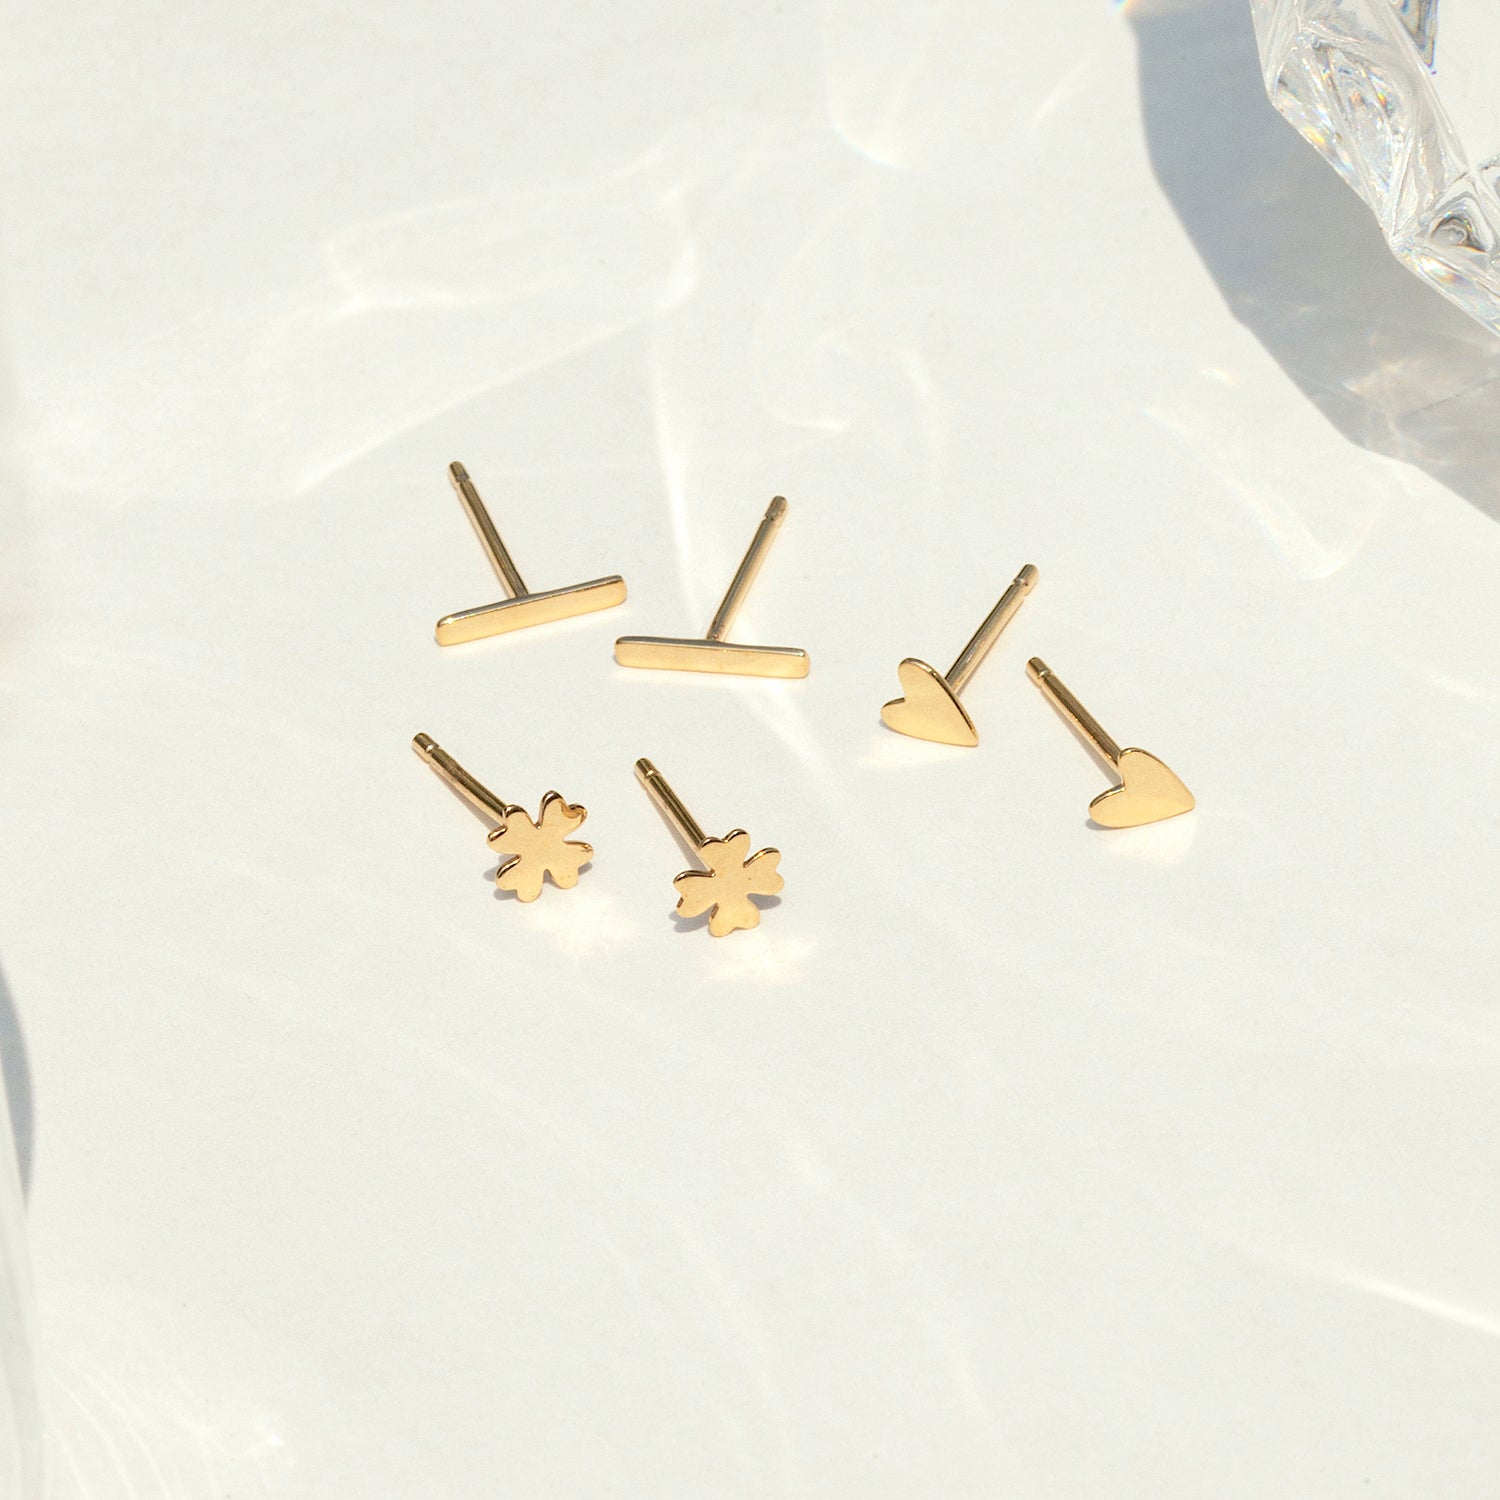 14K Solid Gold Ball Stud Earrings 4mm – J&CO Jewellery